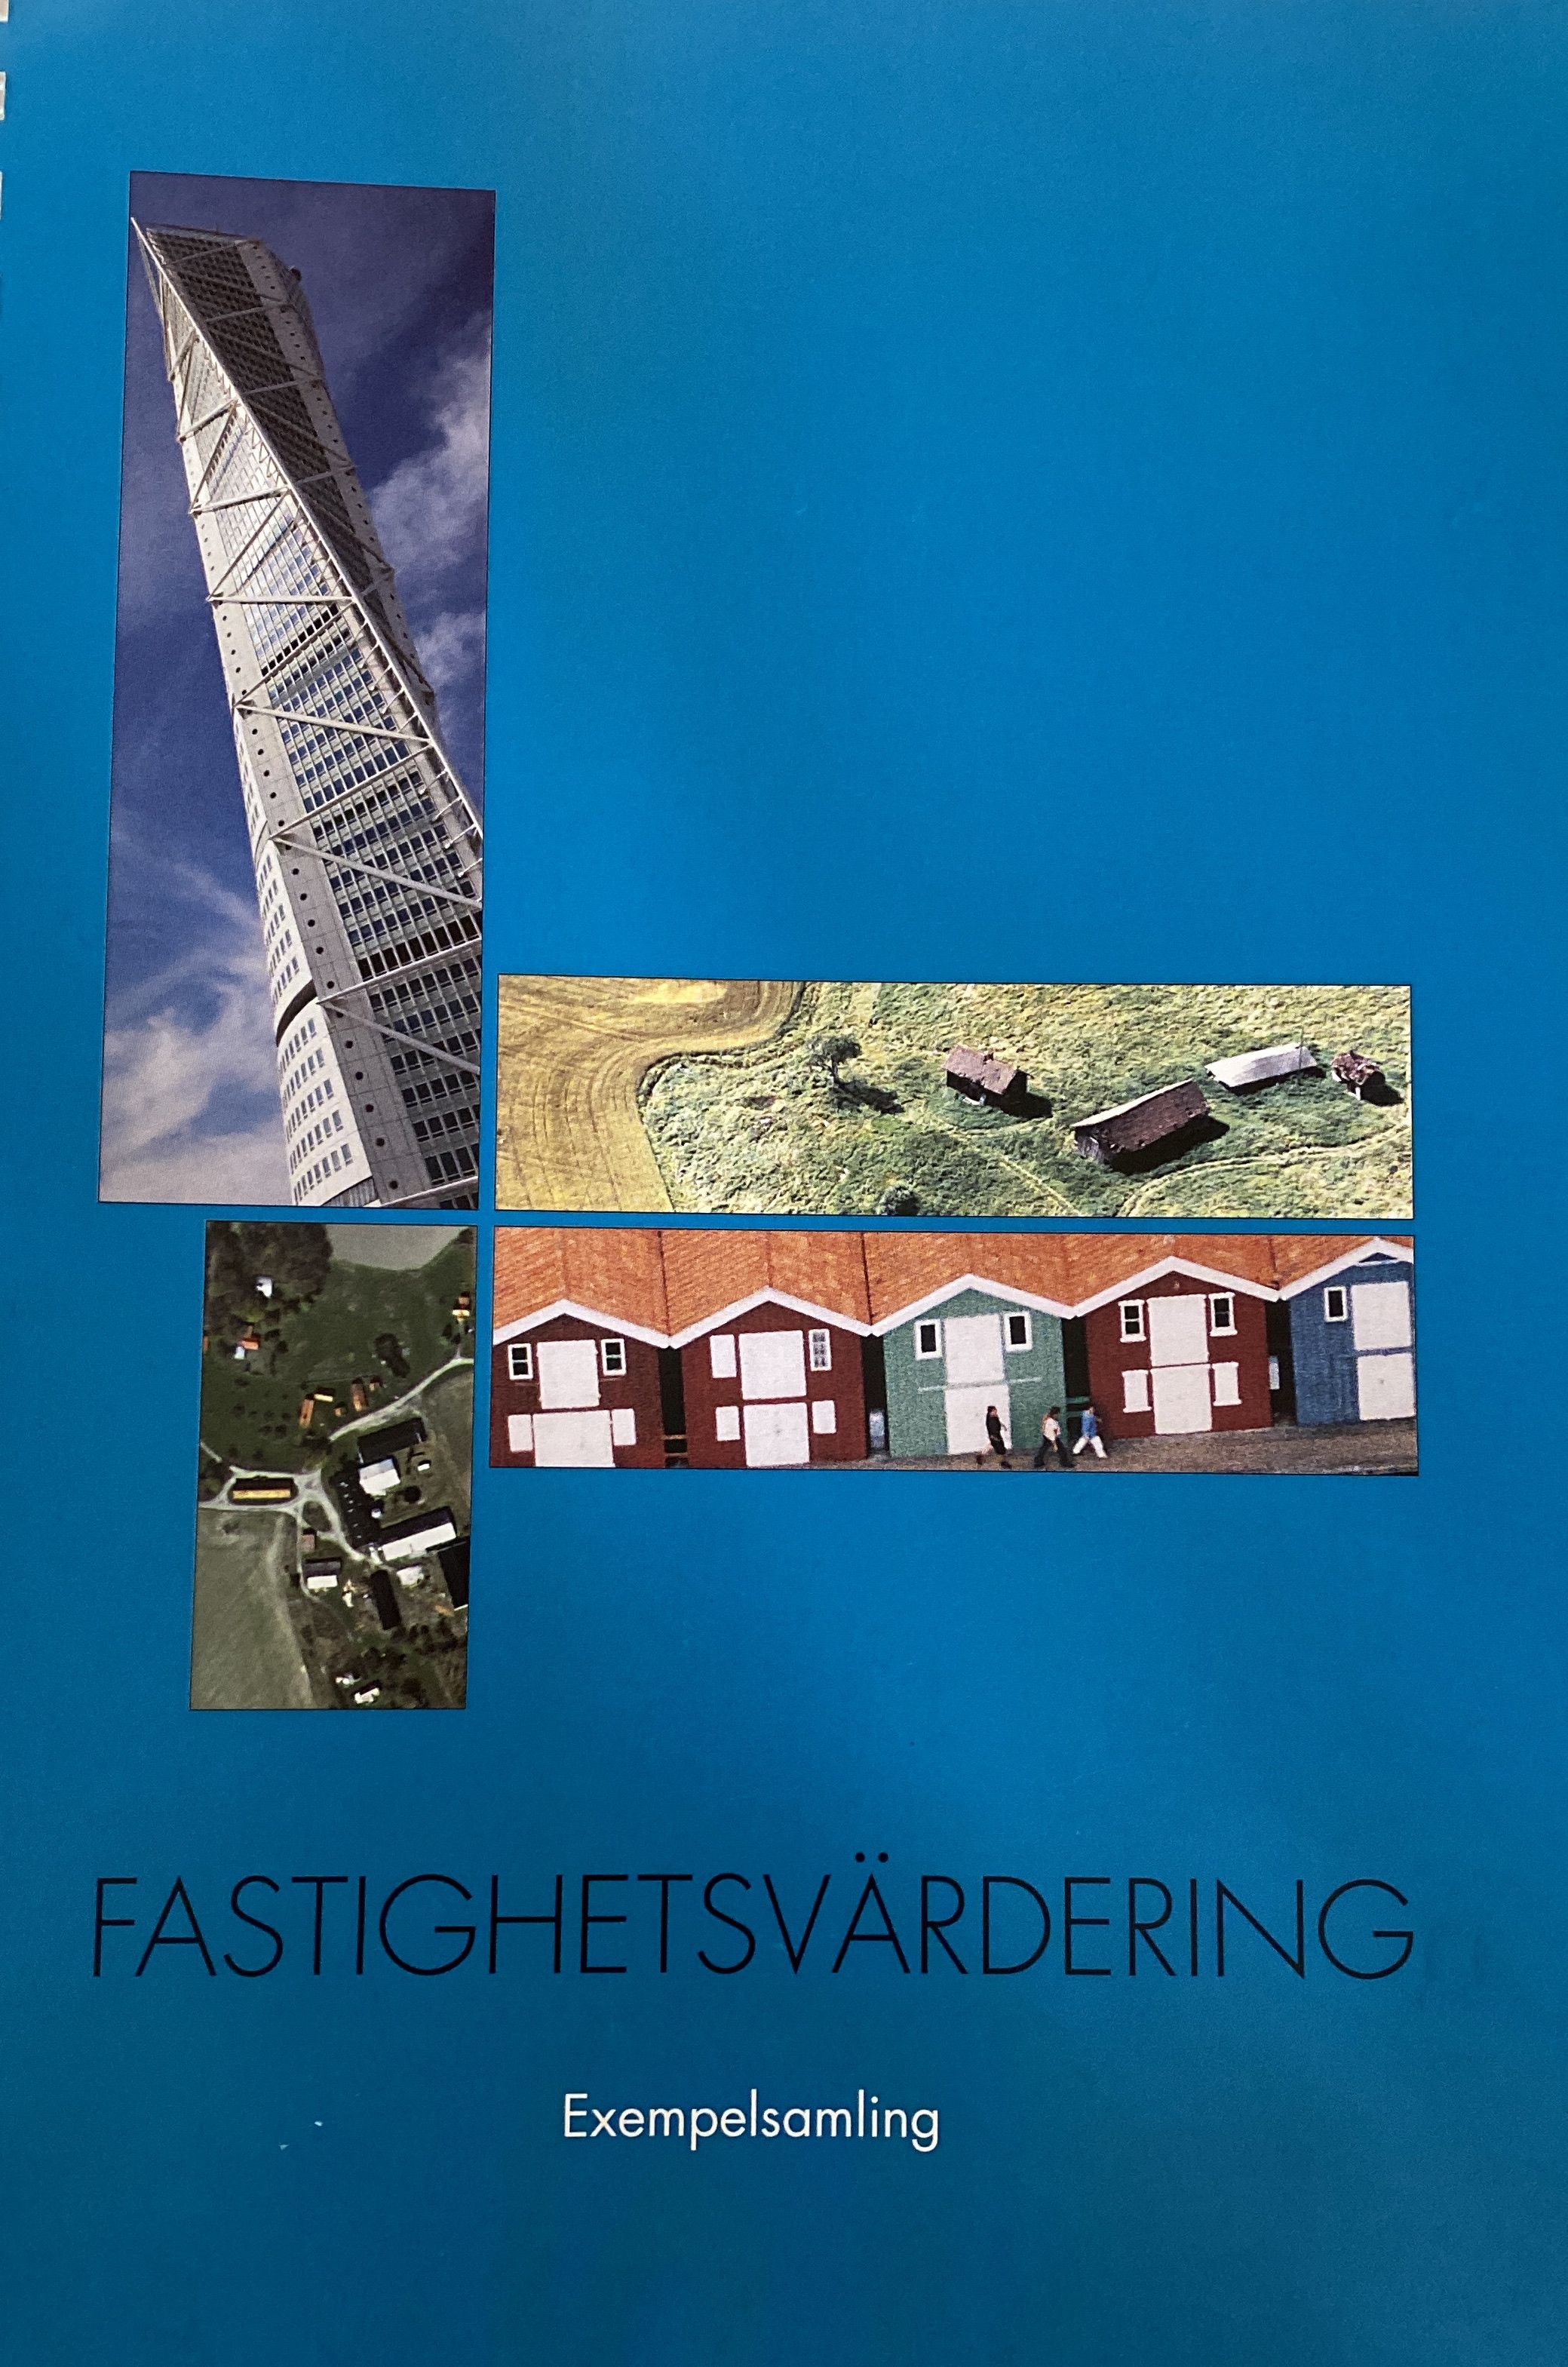 Fastighetsvärdering : exempelsamling, LMV-Rapport 2006:13; Lantmäteriet & Mäklarsamfundet; 2010